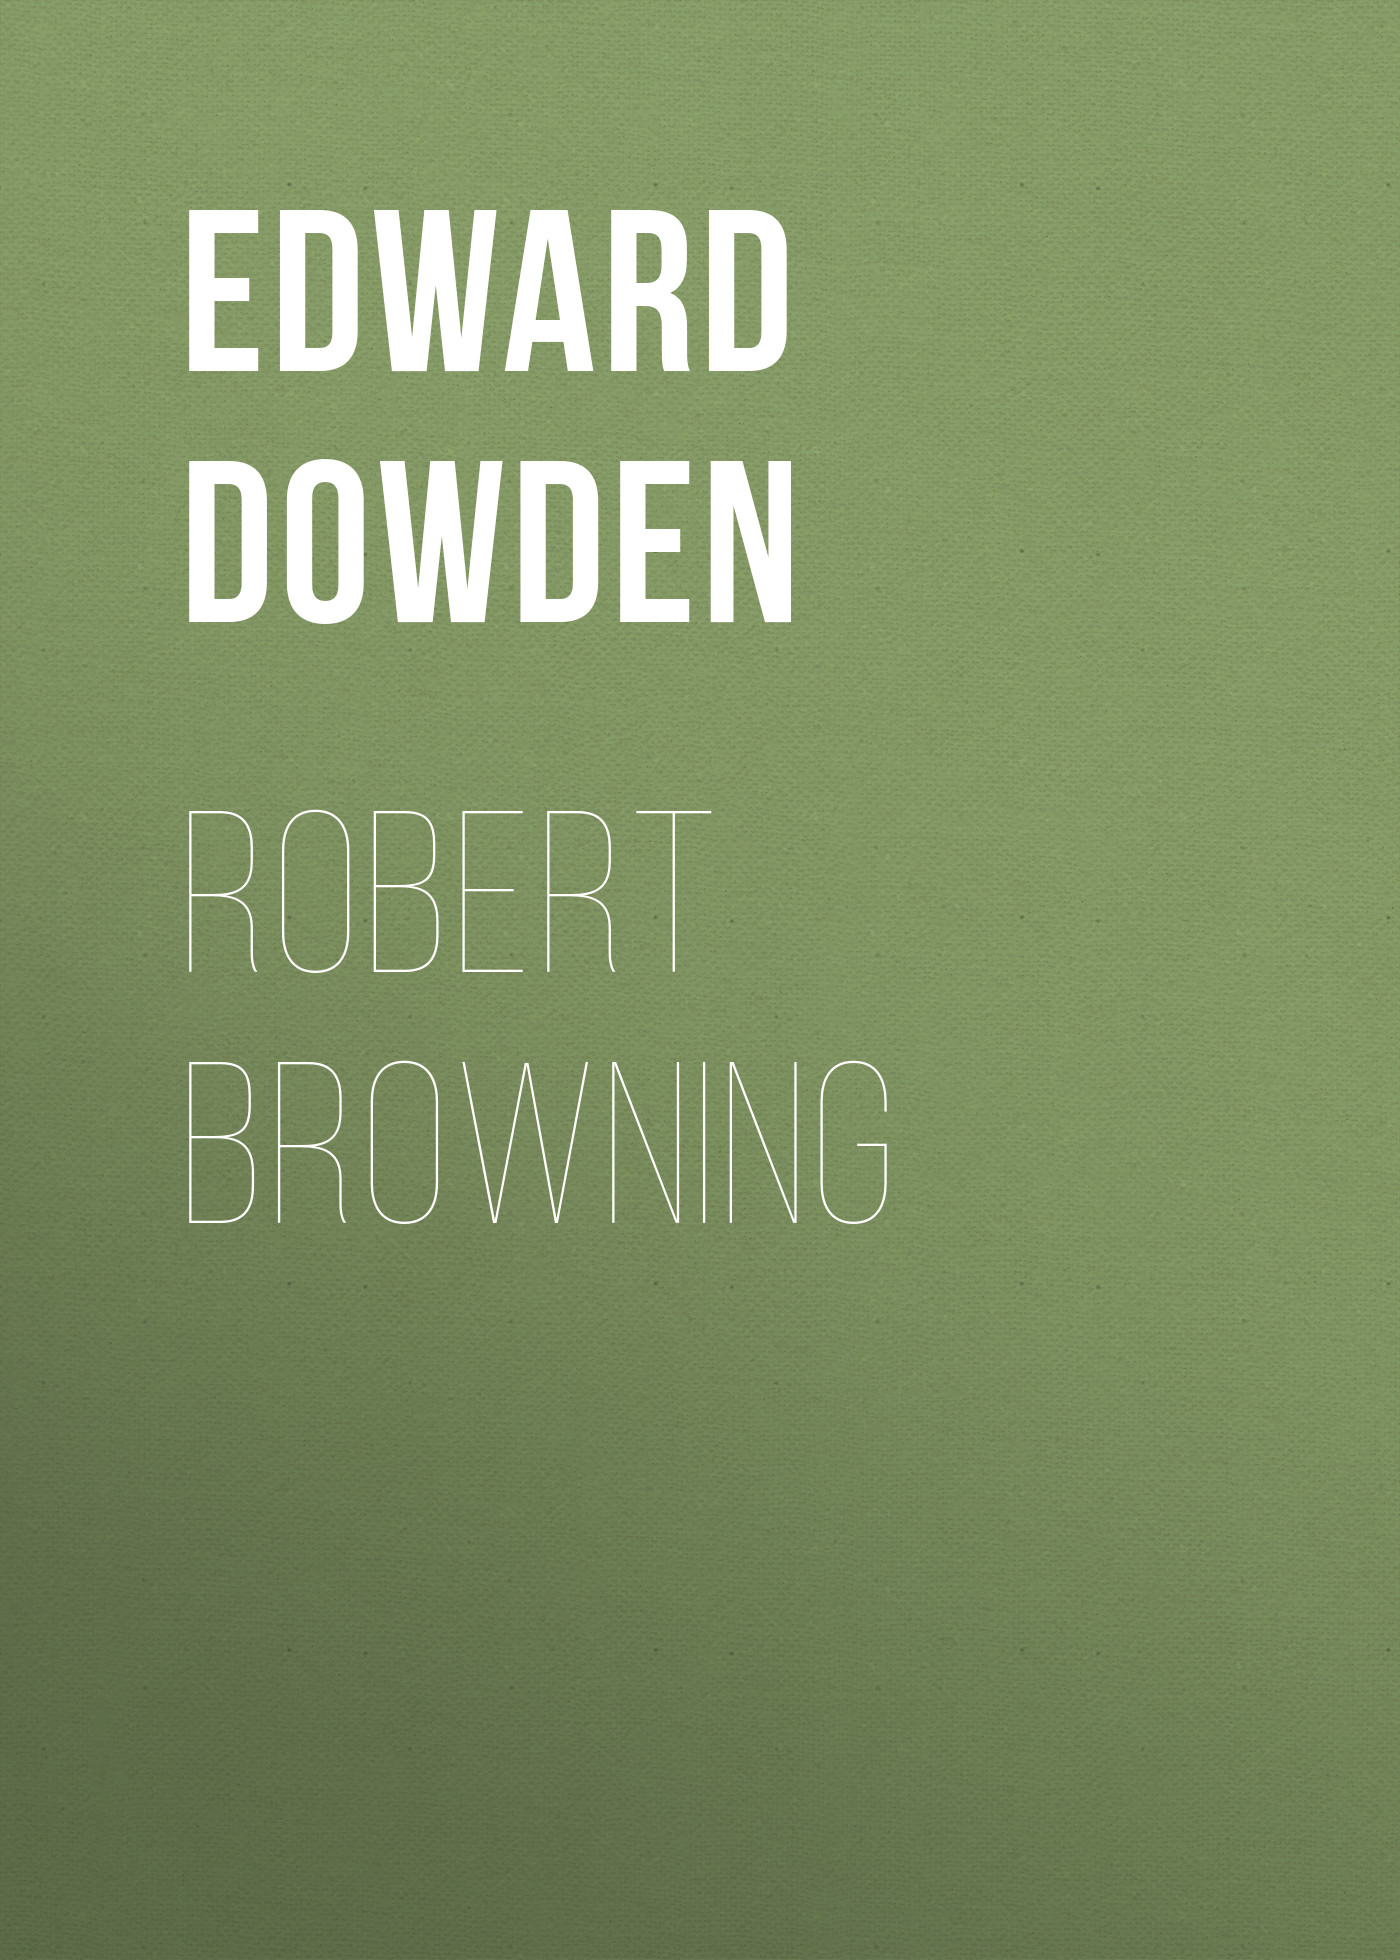 Книга Robert Browning из серии , созданная Edward Dowden, может относится к жанру Биографии и Мемуары, Поэзия, Зарубежная старинная литература, Зарубежная классика, Зарубежные стихи. Стоимость электронной книги Robert Browning с идентификатором 34842150 составляет 0 руб.